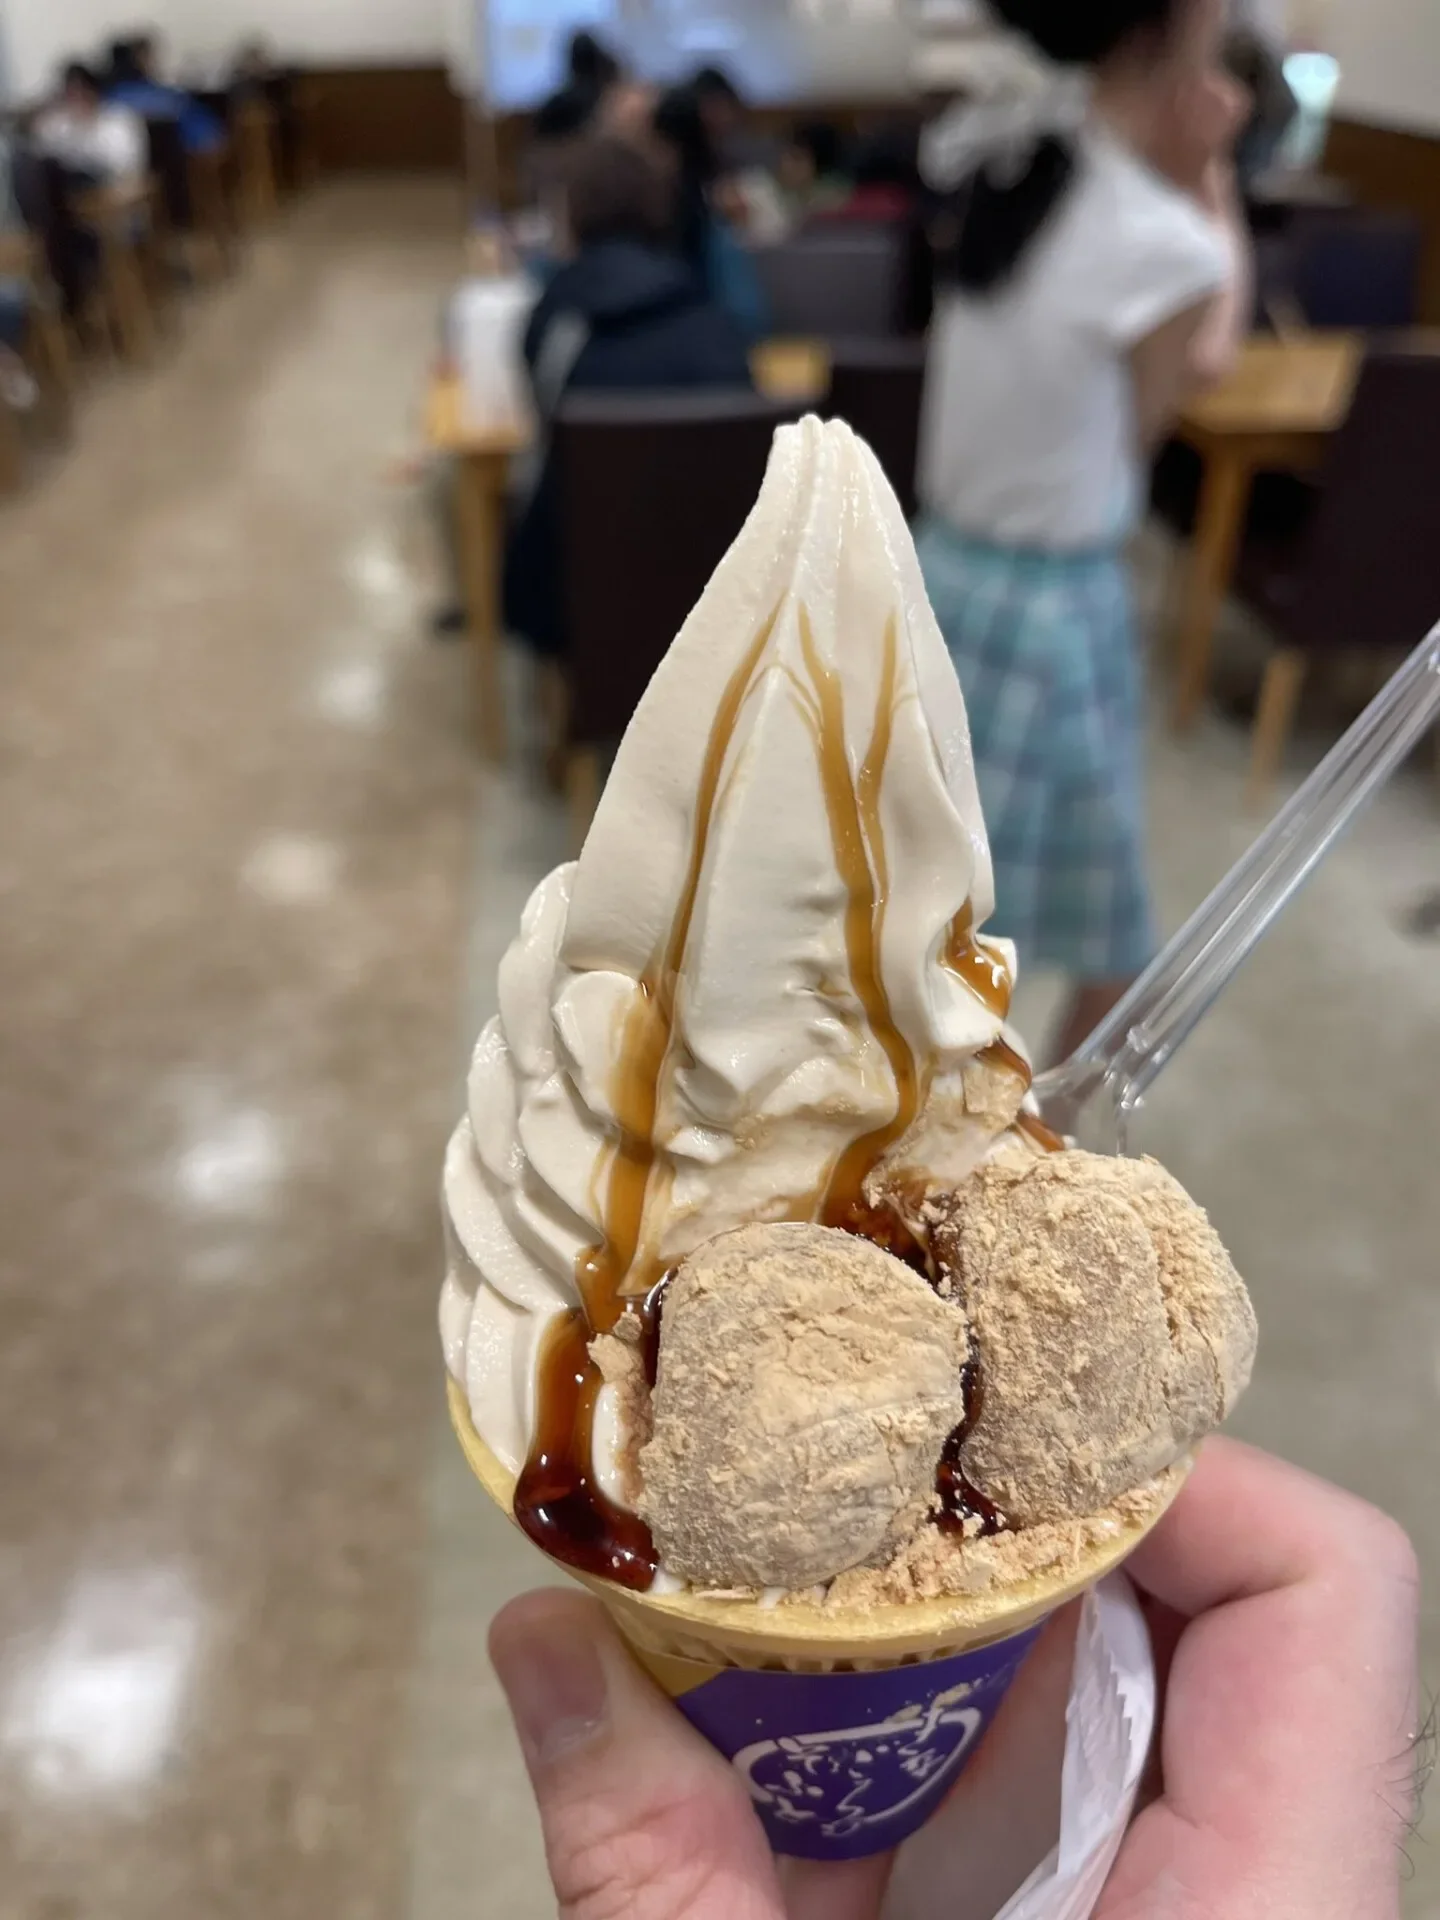 ไวรัล! หนุ่มญี่ปุ่นค้นหาร้านไอศกรีมด้วยภาพบน &Quot;Google&Quot; แต่ผลลัพธ์ที่ได้กลับมีแต่ &Quot;ไข่แมว&Quot;